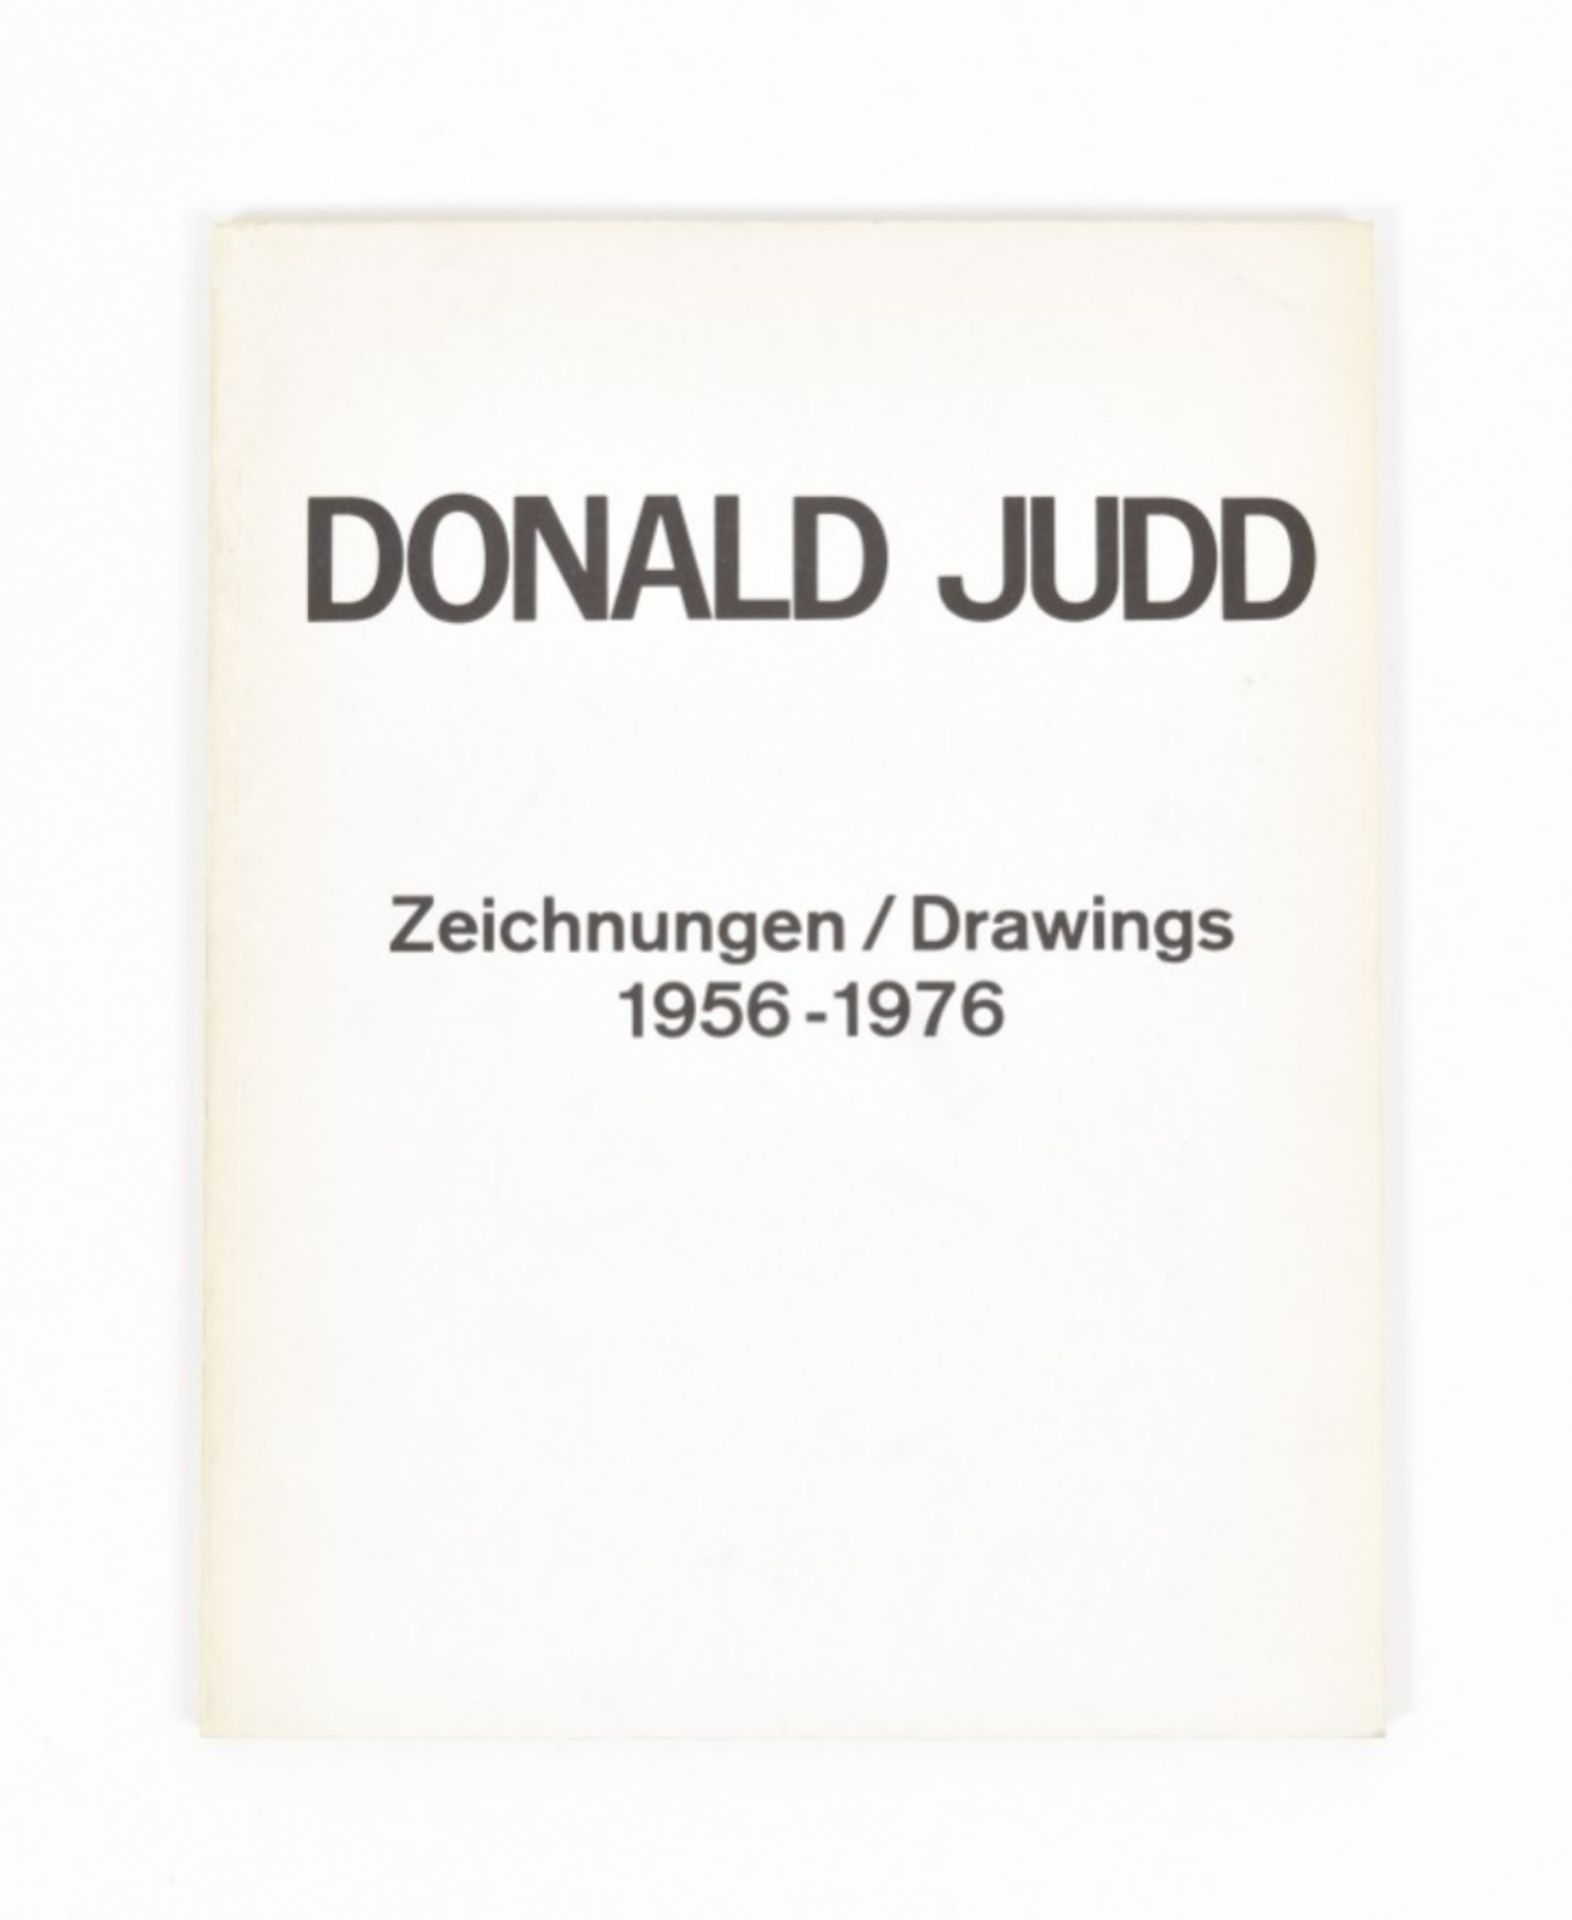 [s and 1970s] Donald Judd  - Bild 2 aus 6